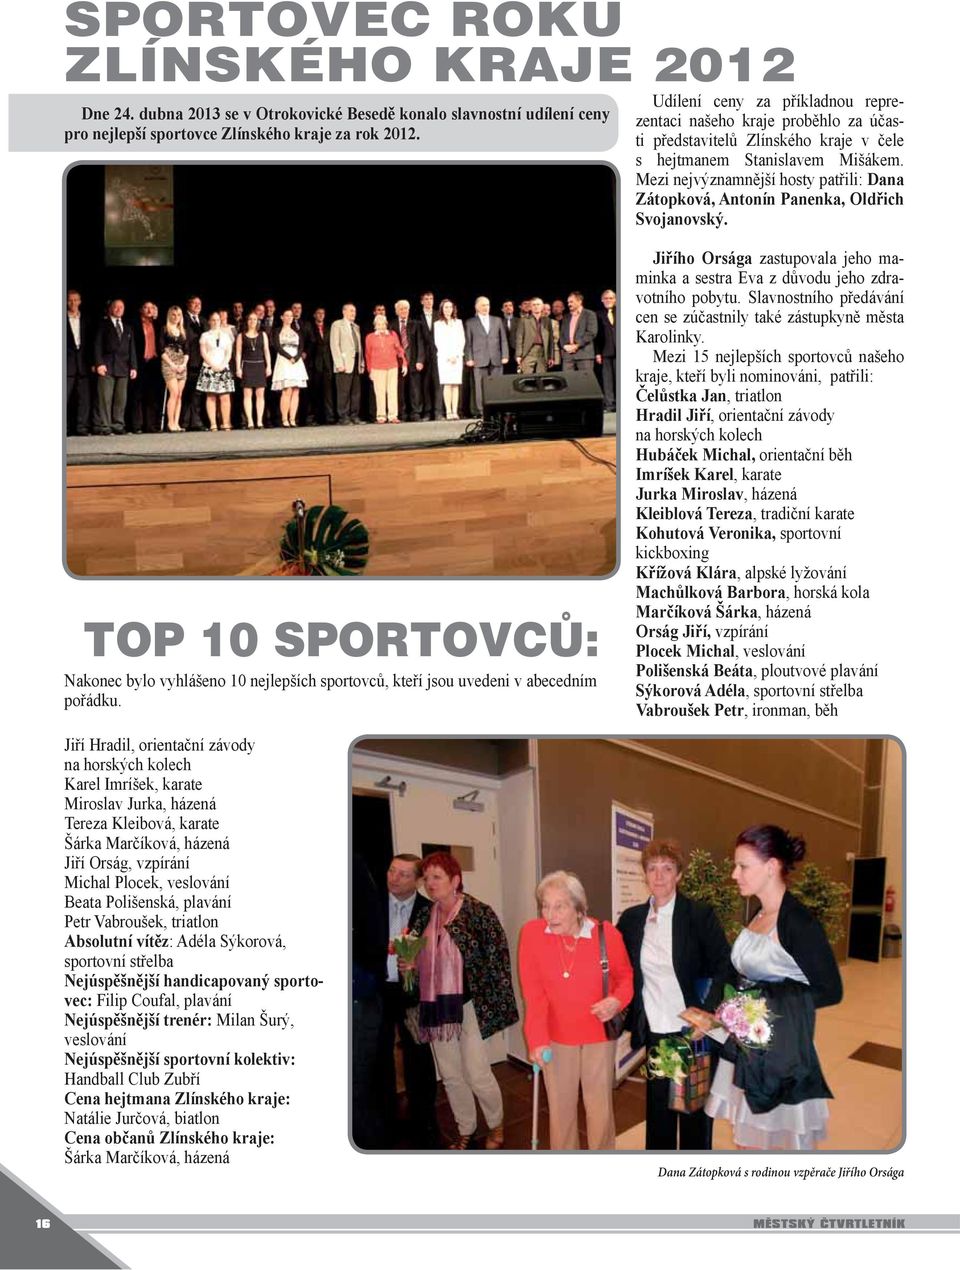 Mezi nejvýznamnější hosty patřili: Dana Zátopková, Antonín Panenka, Oldřich Svojanovský. TOP 10 SPORTOVCŮ: Nakonec bylo vyhlášeno 10 nejlepších sportovců, kteří jsou uvedeni v abecedním pořádku.